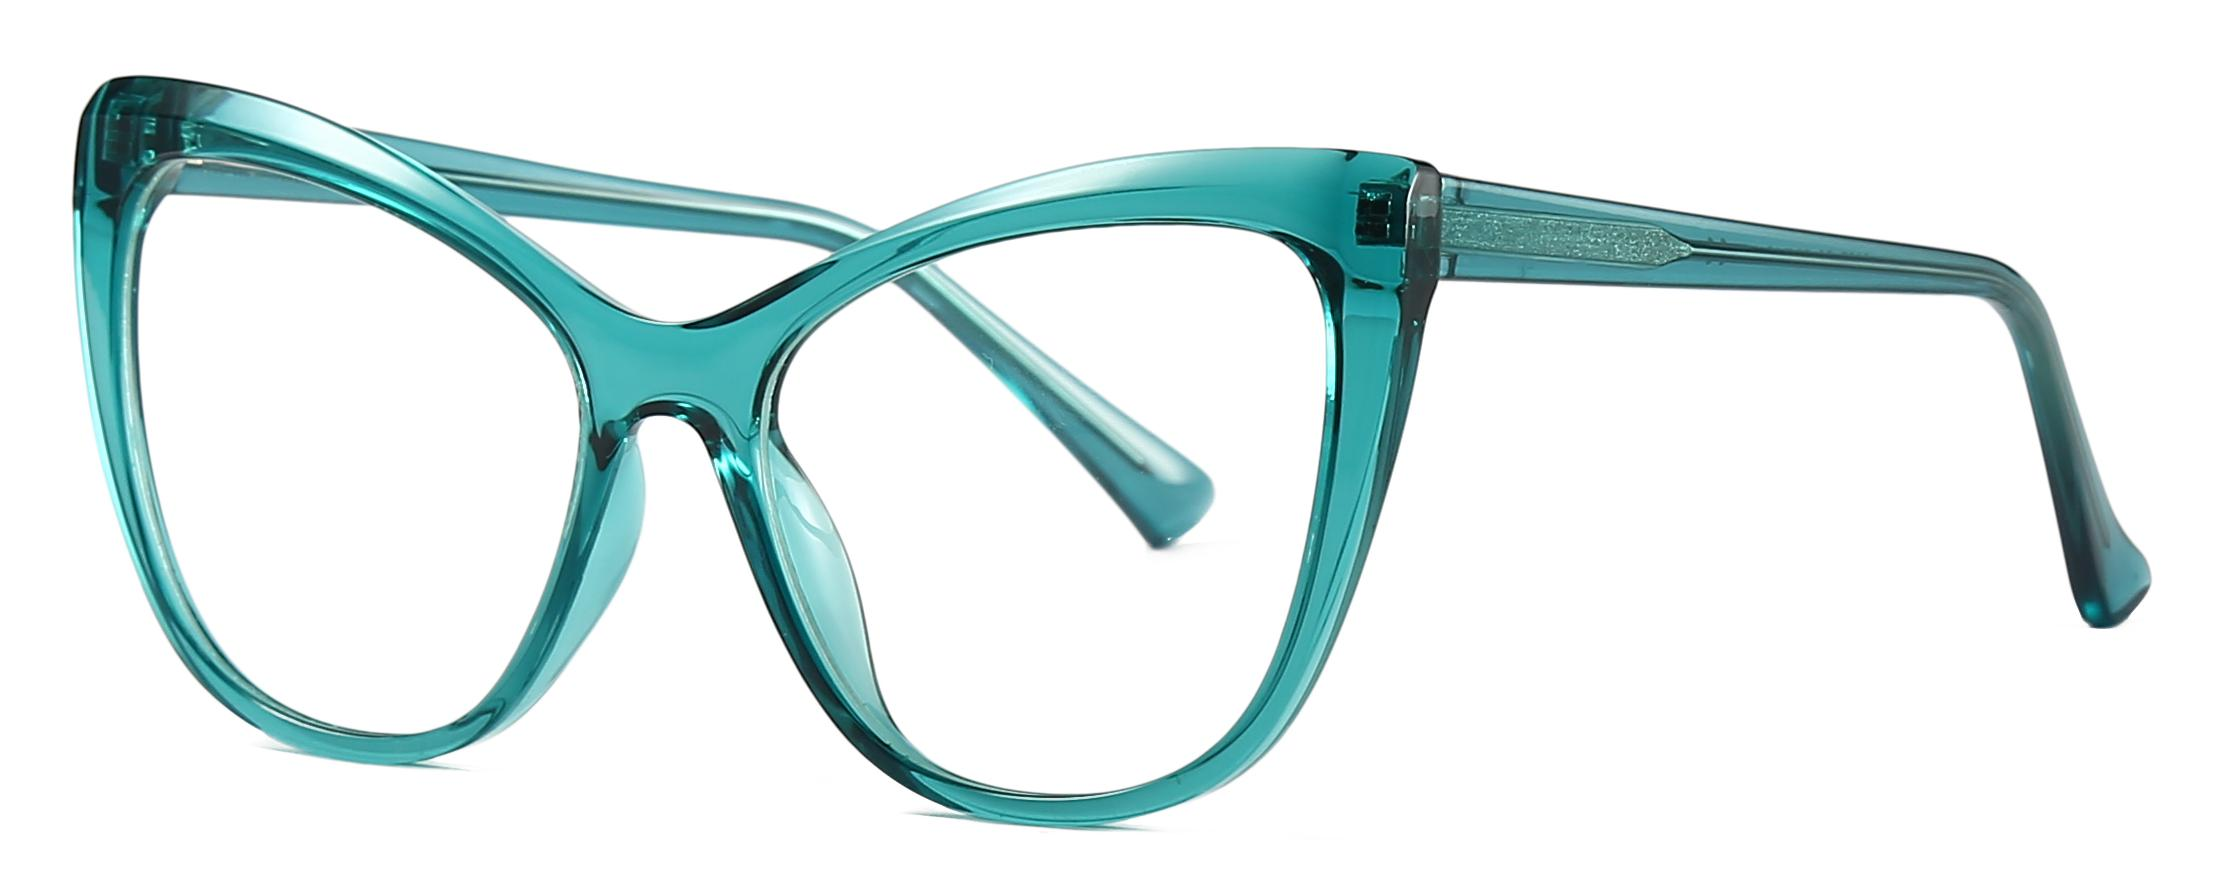 ອ່ານສິນຄ້າ Cat Eye Shape TR90+CP Anti-blue light lenses Women Optical Frames #2027